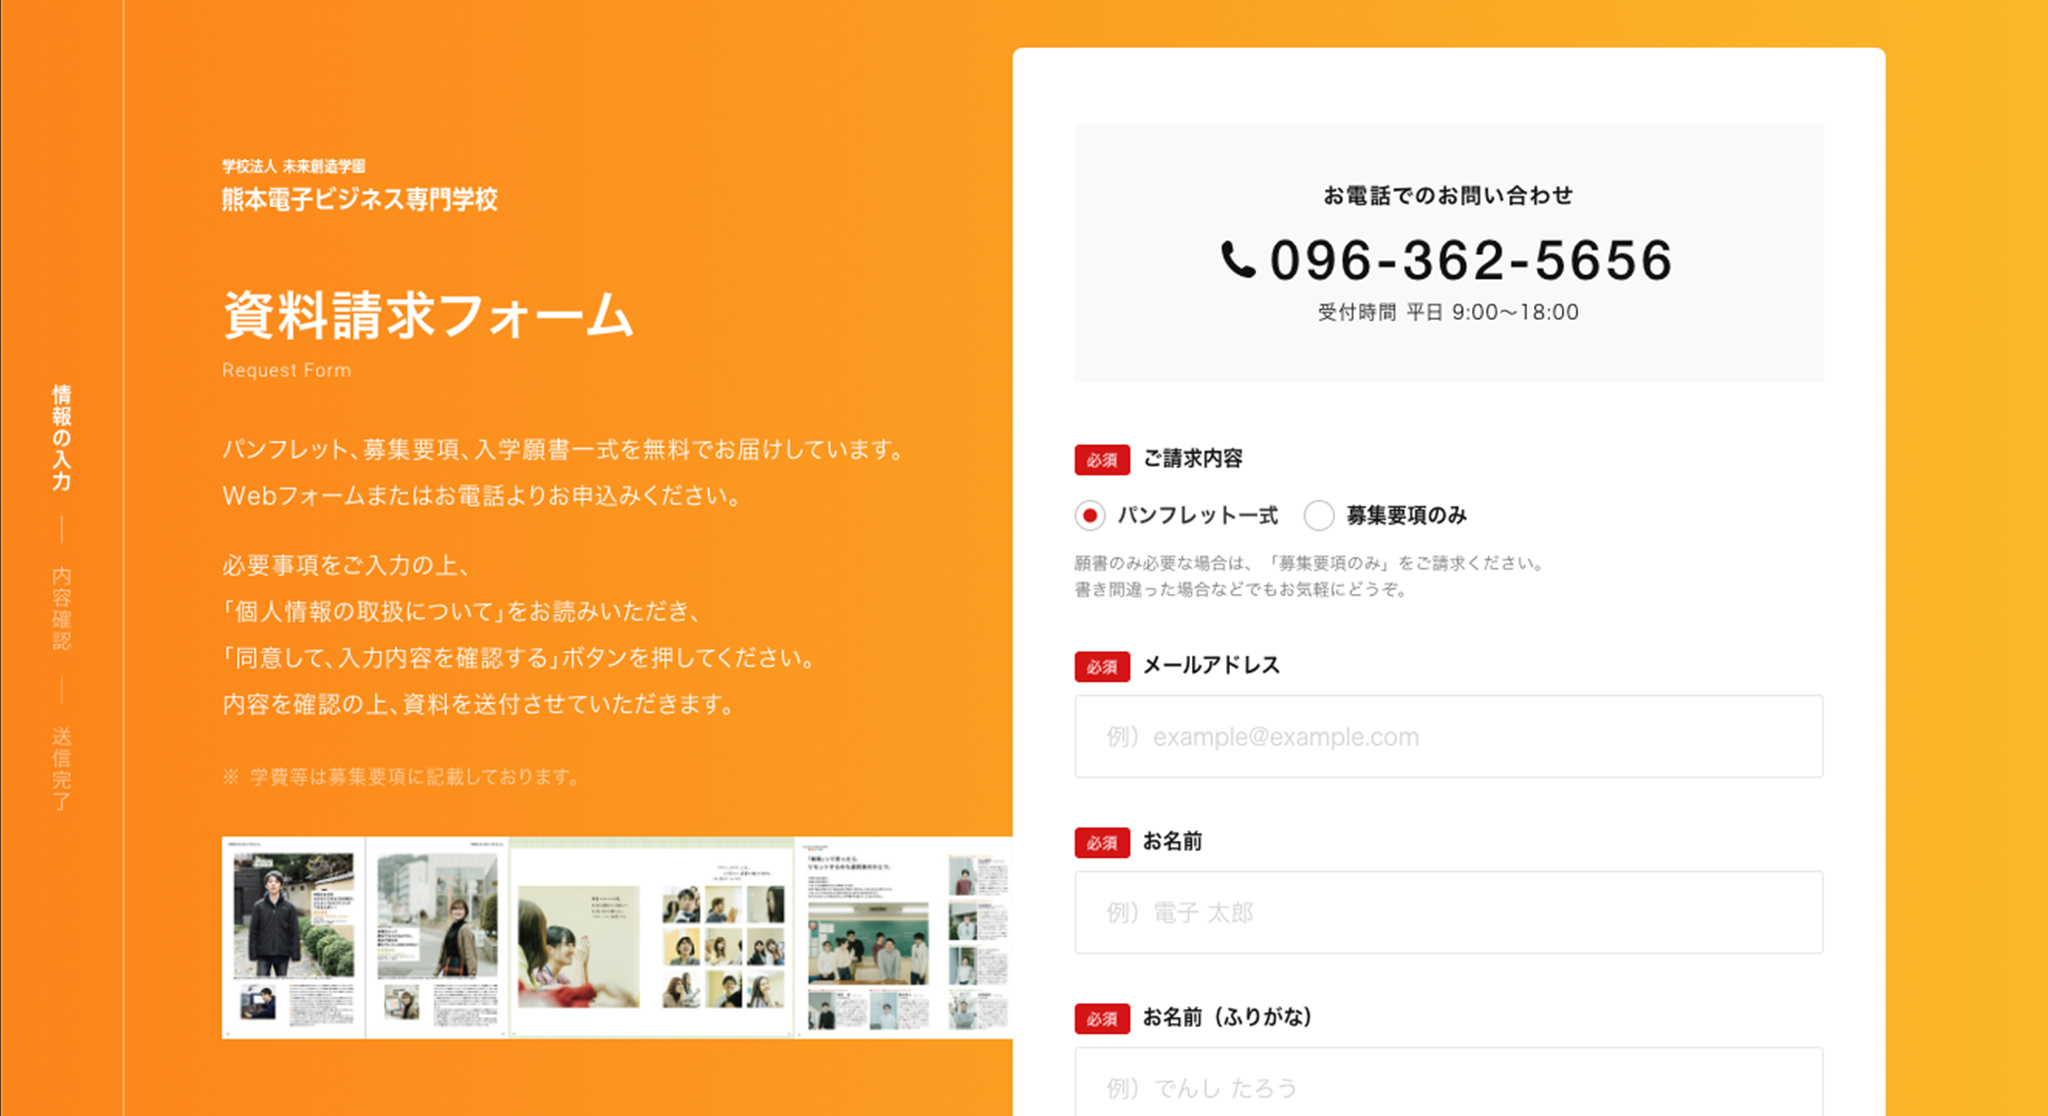 熊本電子ビジネス専門学校資料請求フォーム